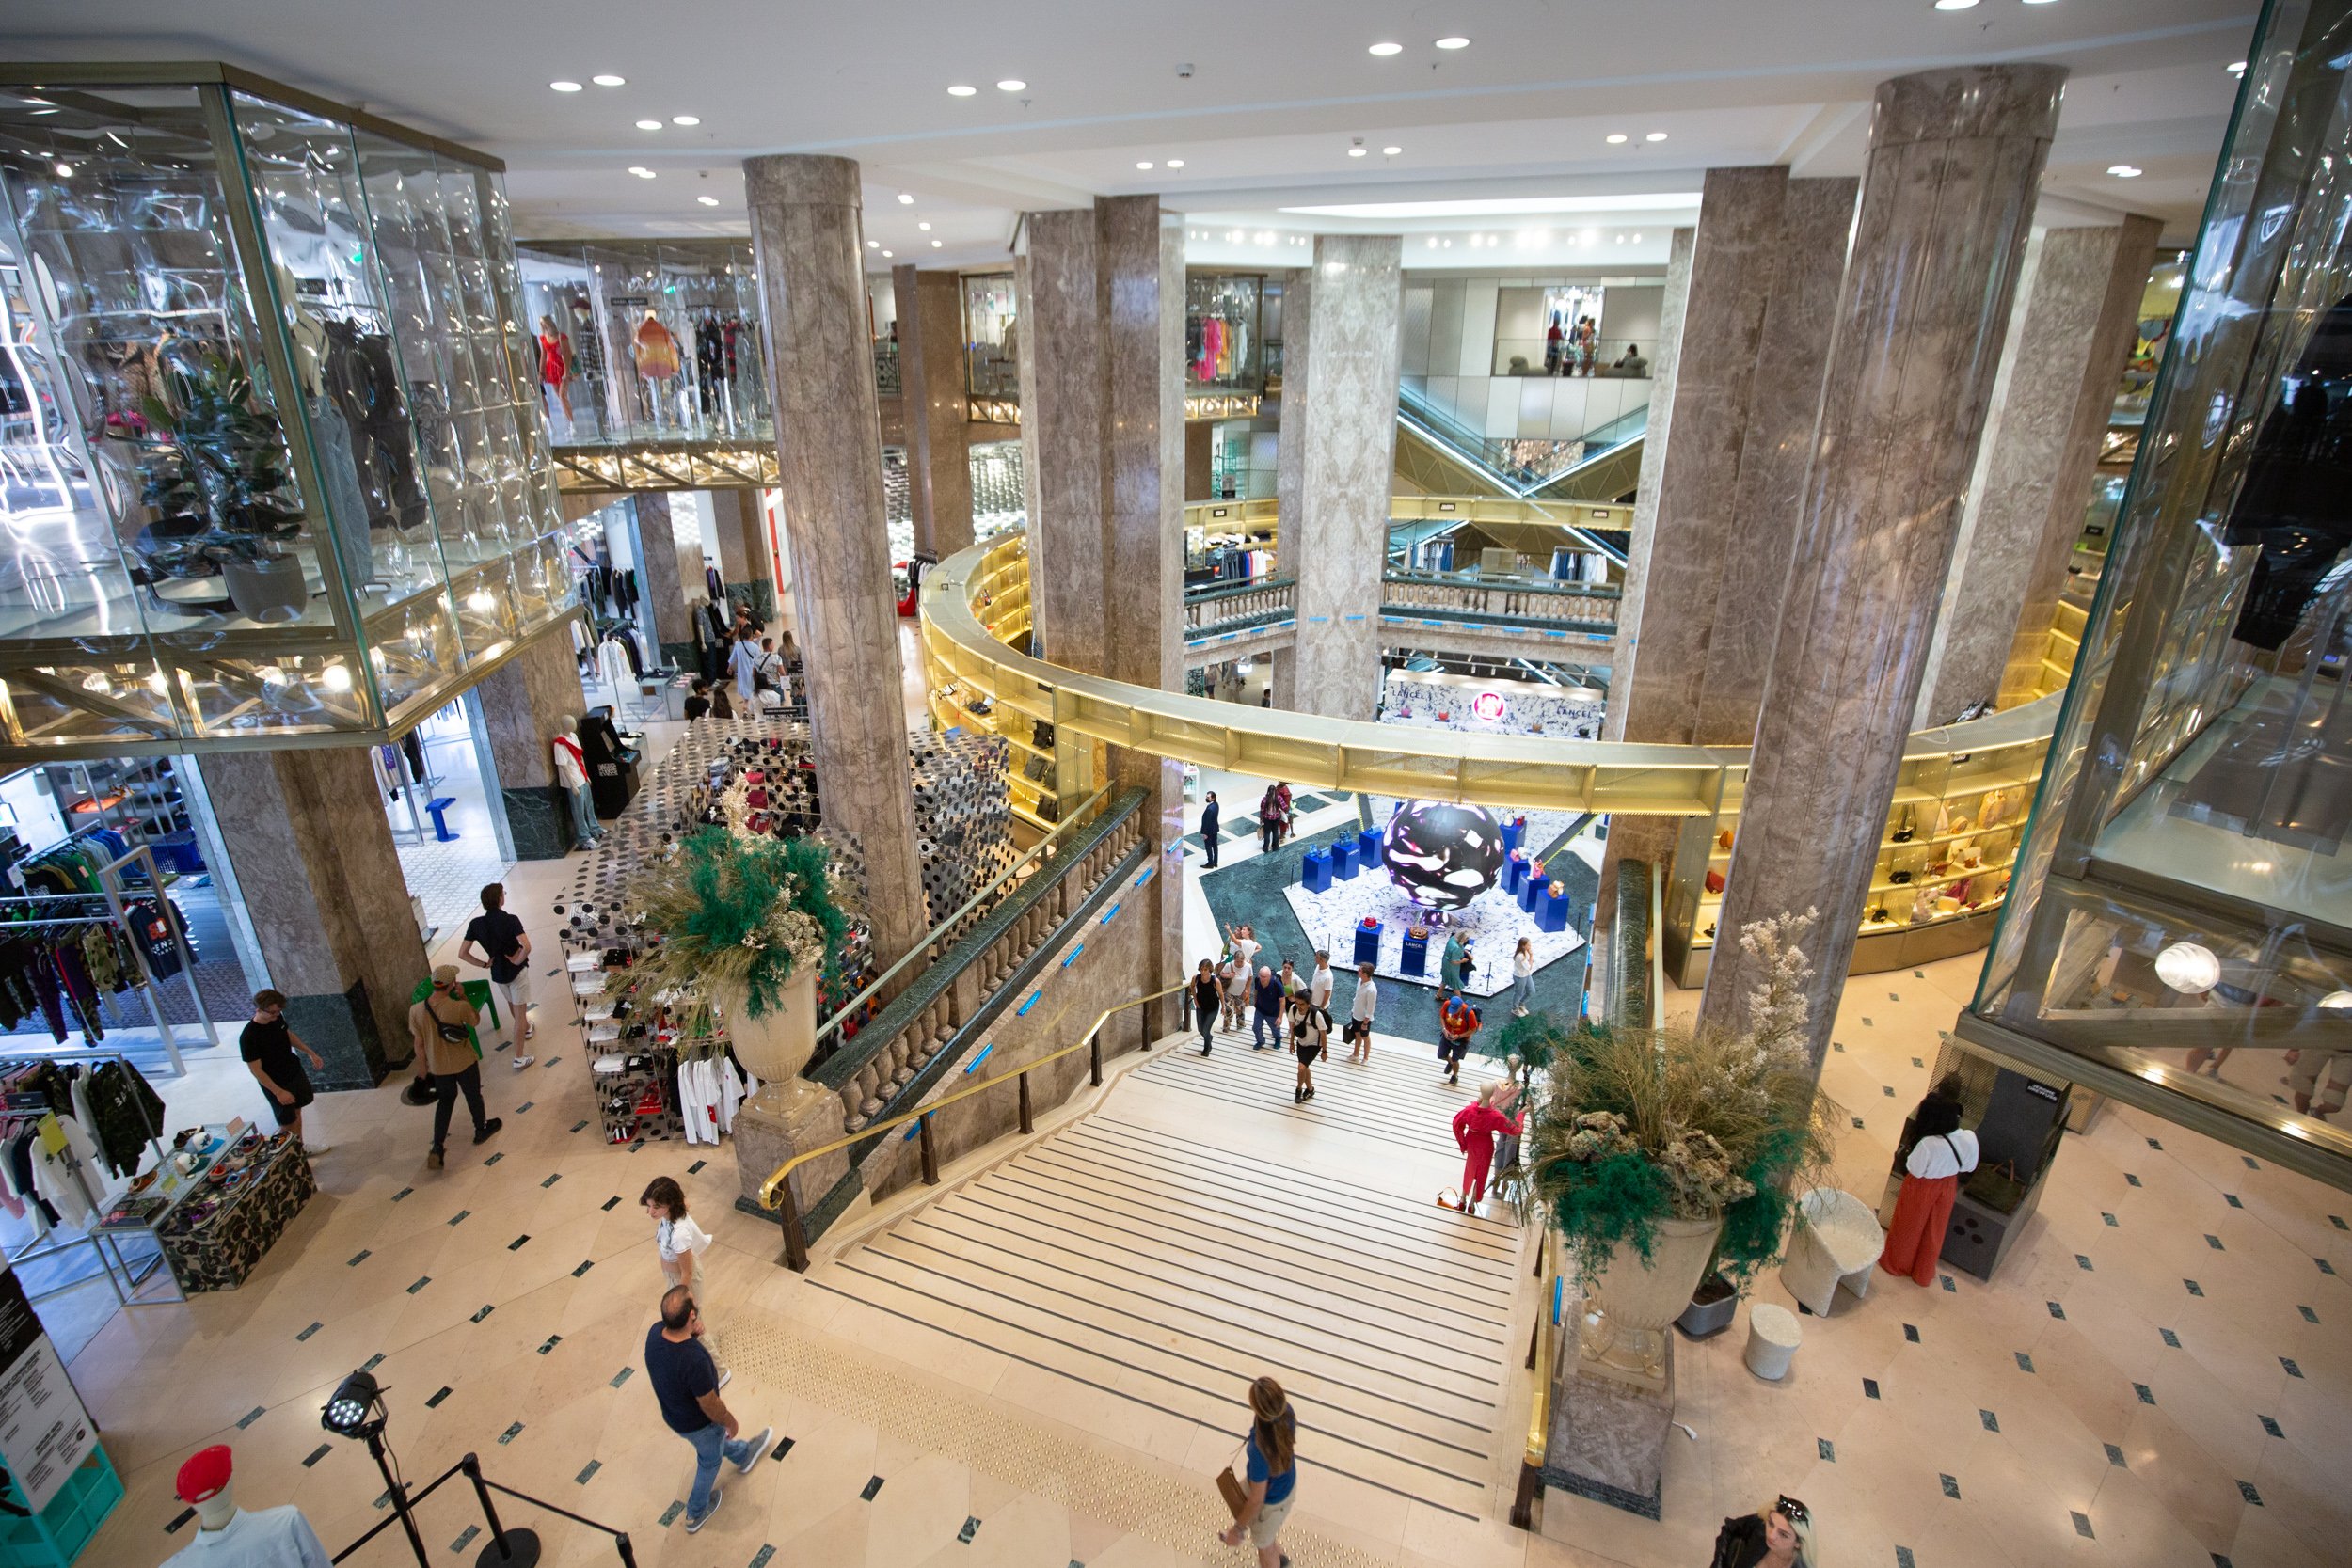  architecture-of-paris-mall-interior 